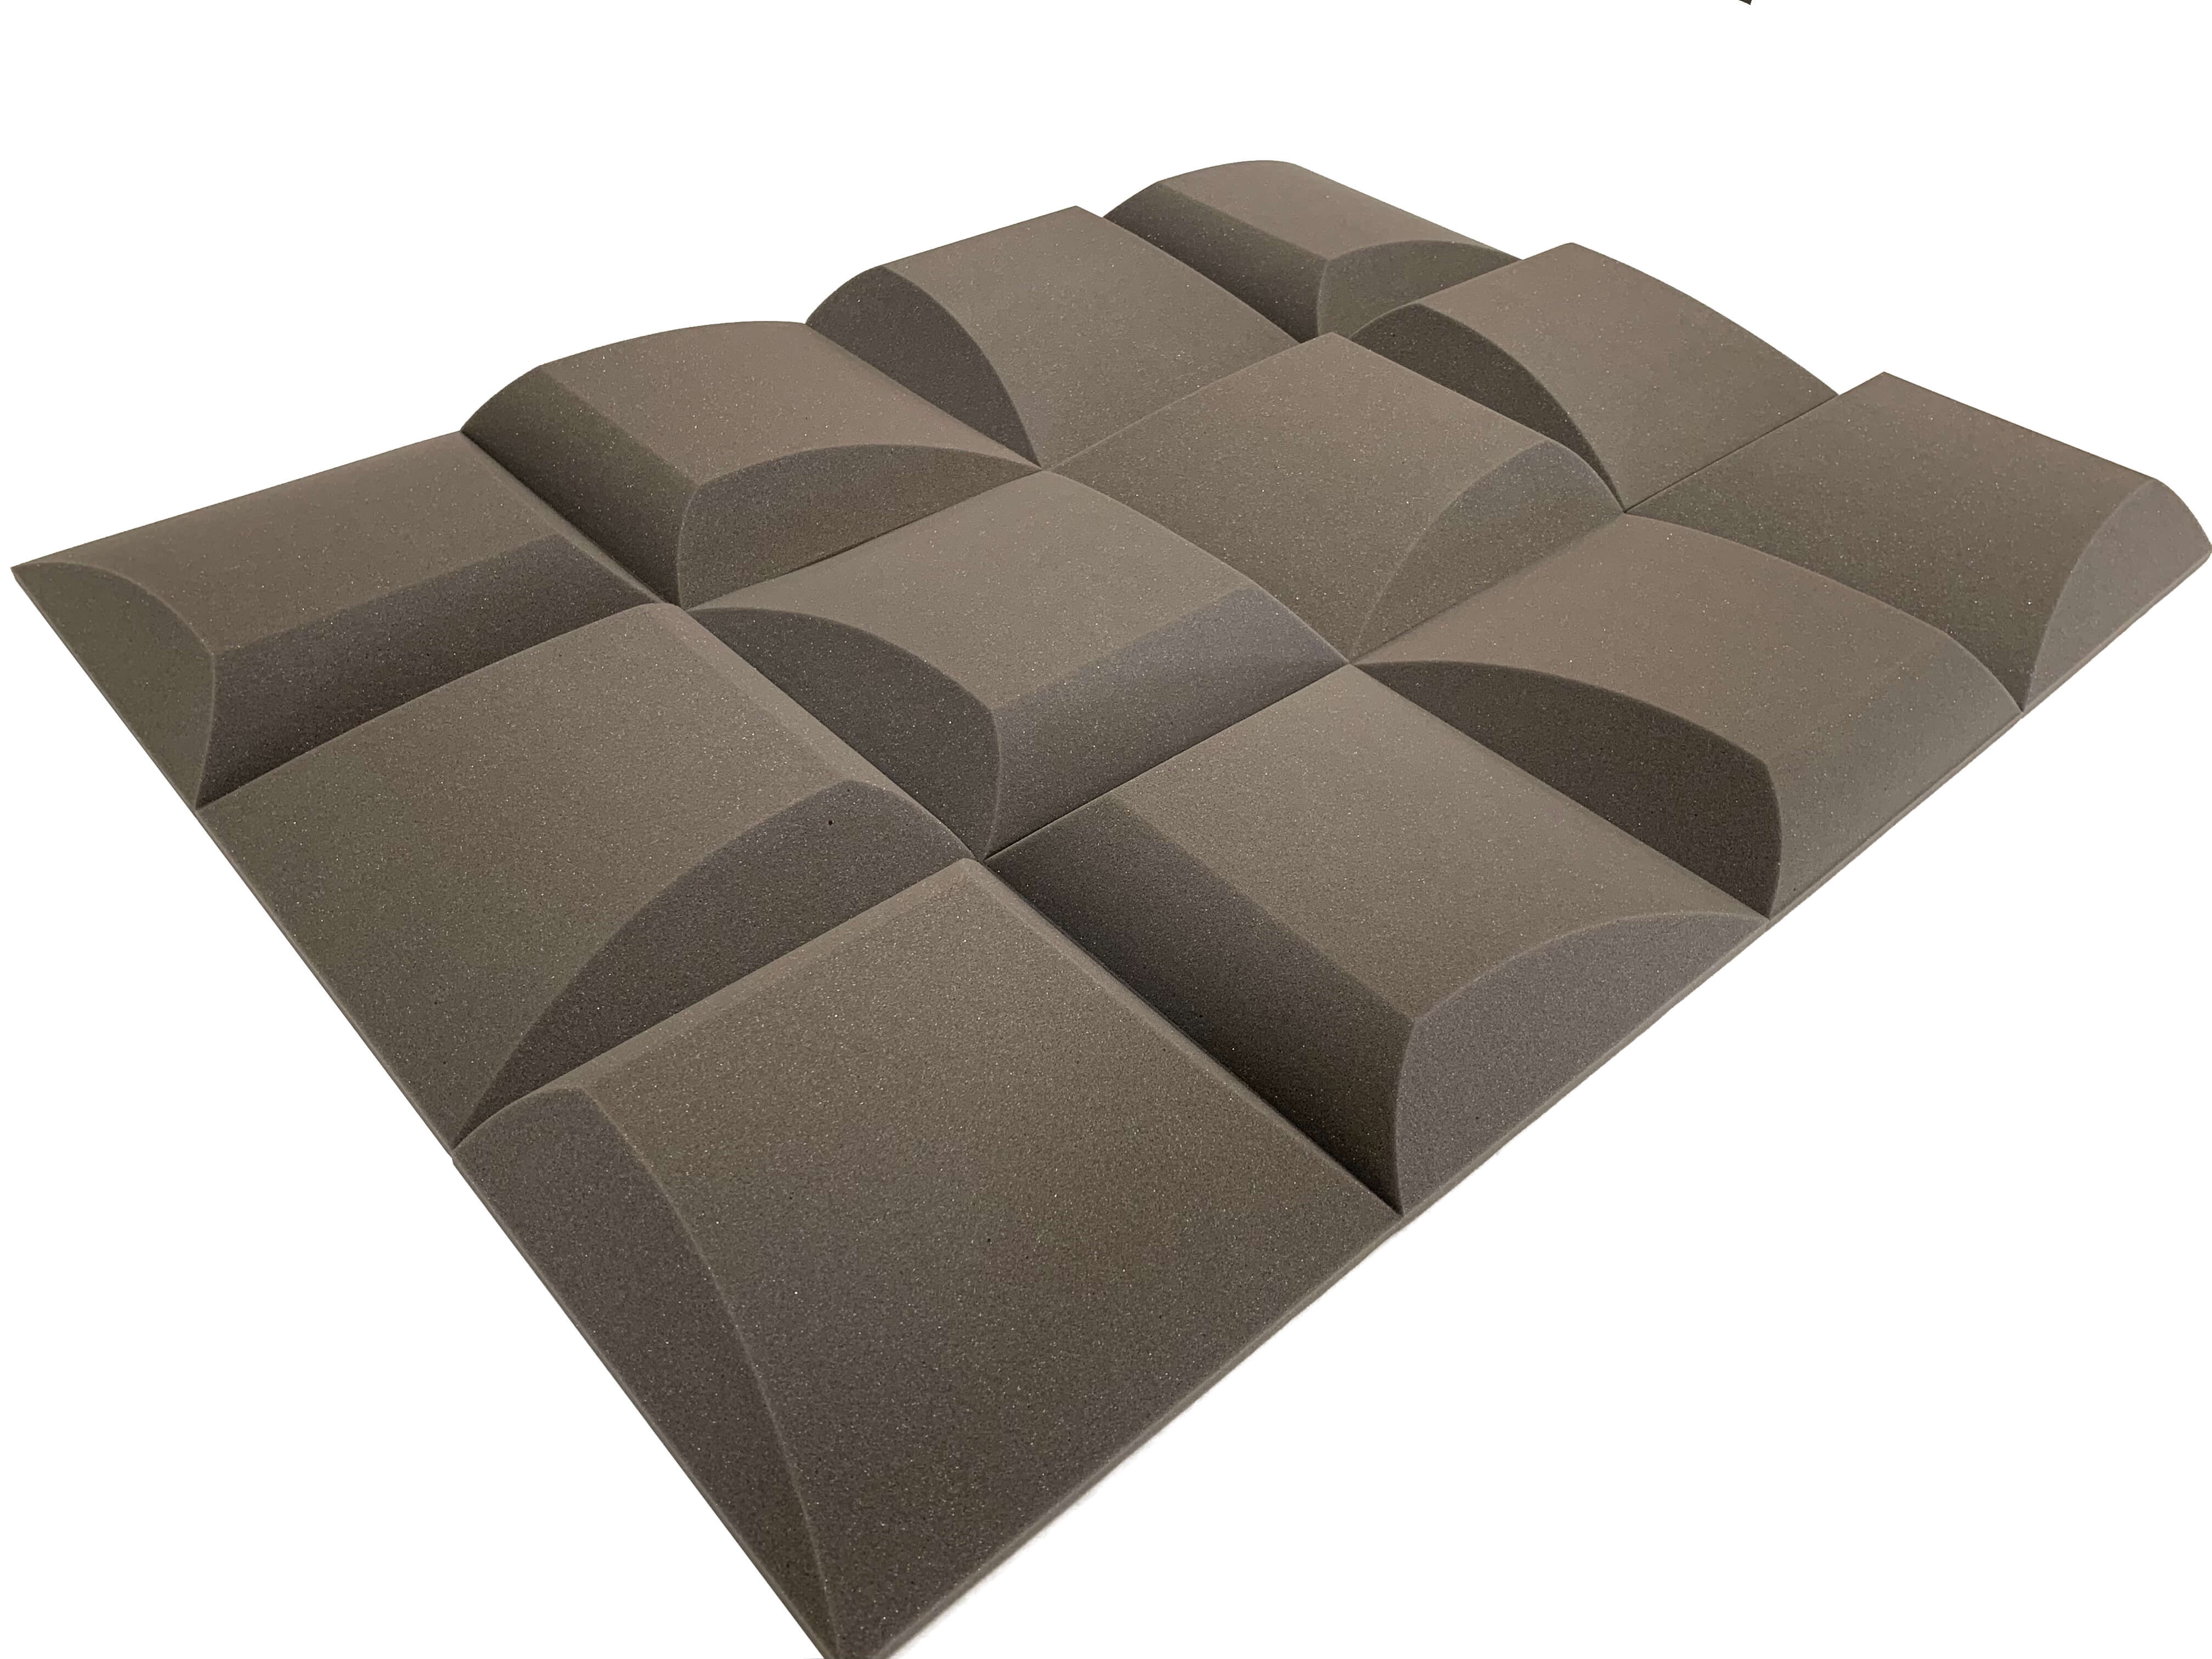 AeroFoil 12" Acoustic Studio Foam Tile Pack - 12 Tiles, 1.1qm Coverage-11